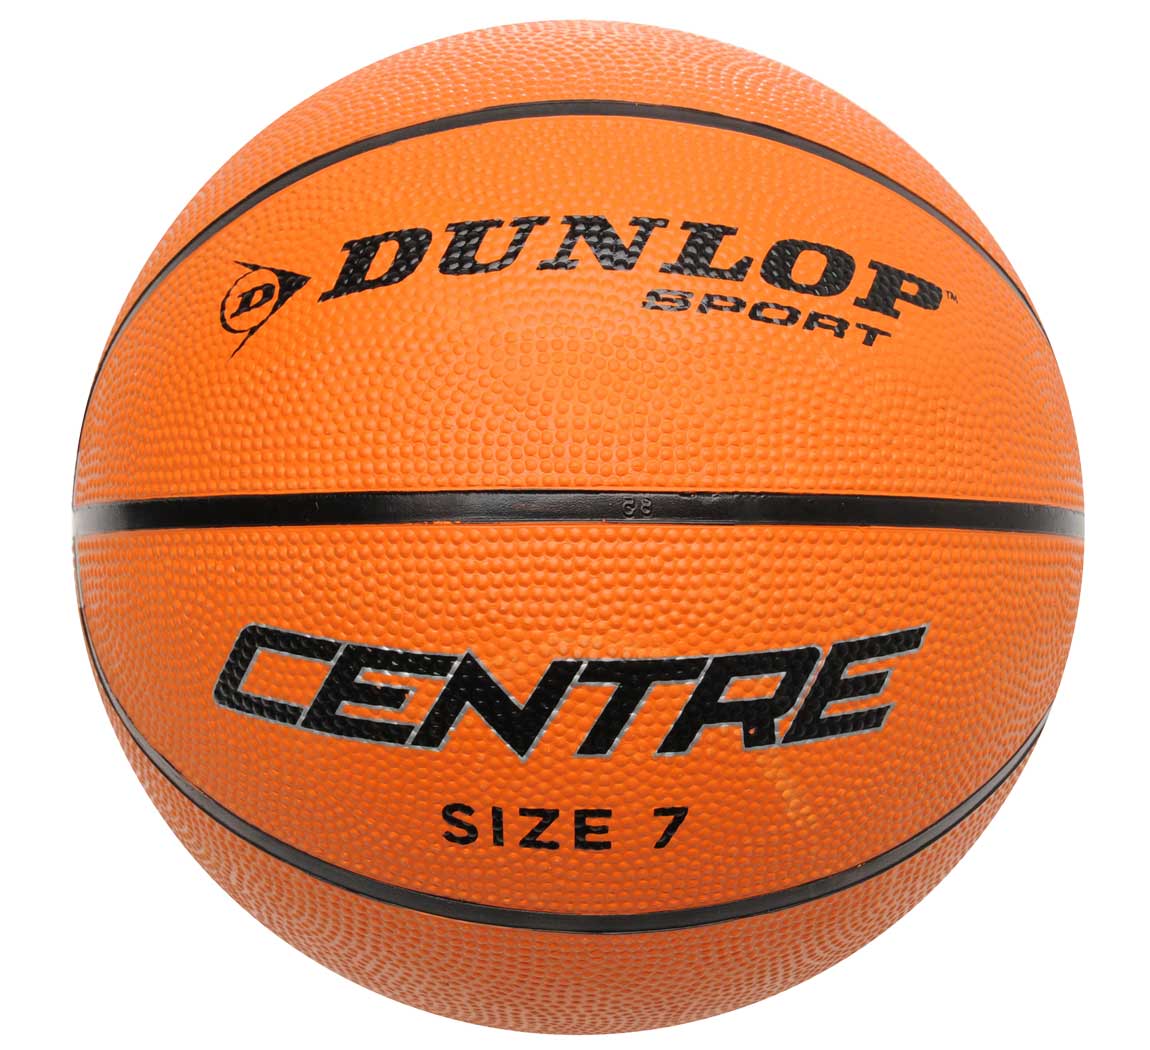 Dunlop Basketballs